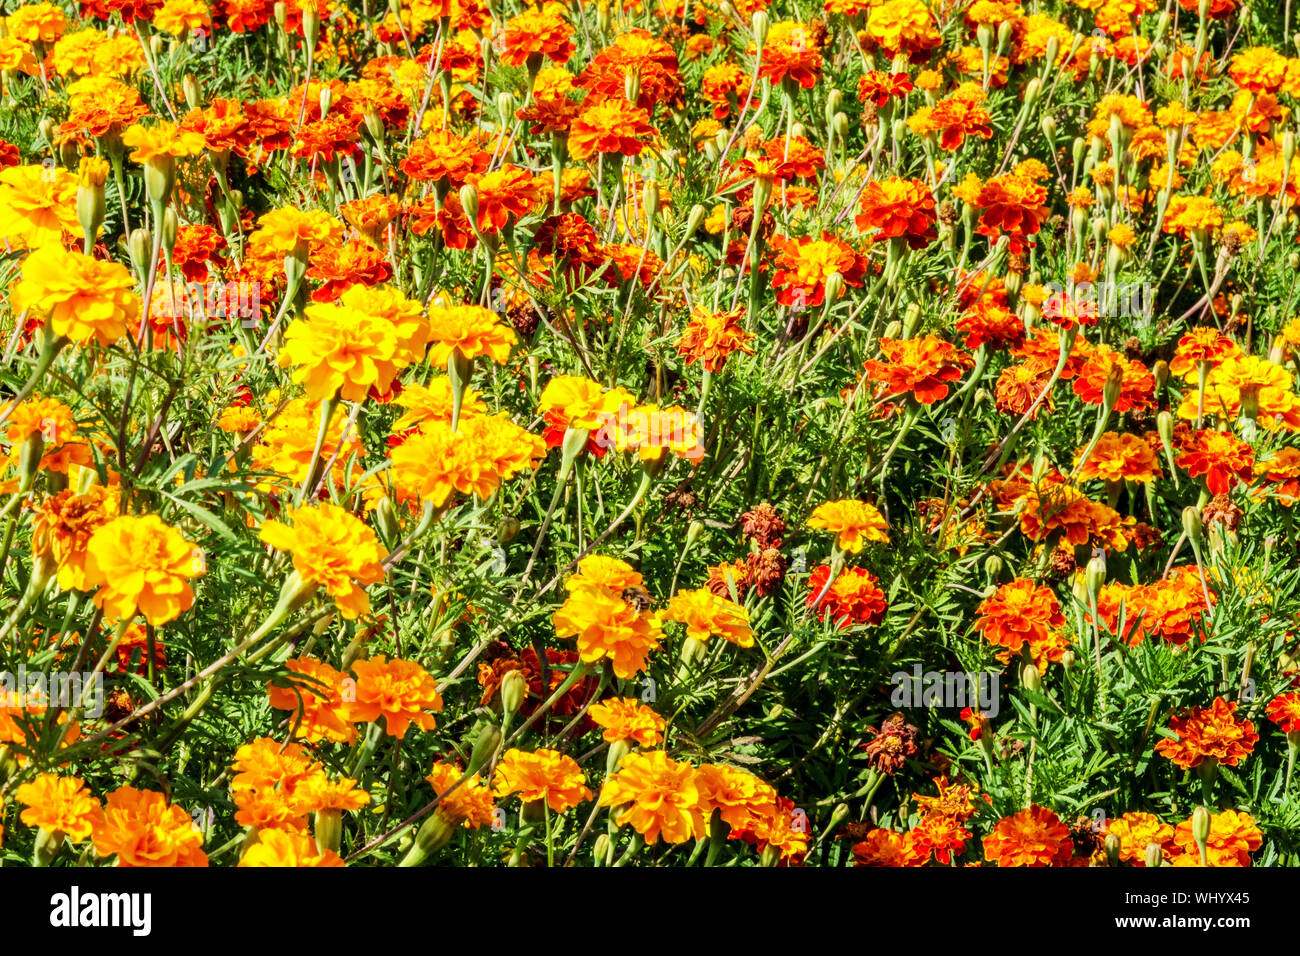 Letto francese di fiori marigold, piante annuali, fiori gialli-arancioni arance biancheria da letto marigolds Foto Stock